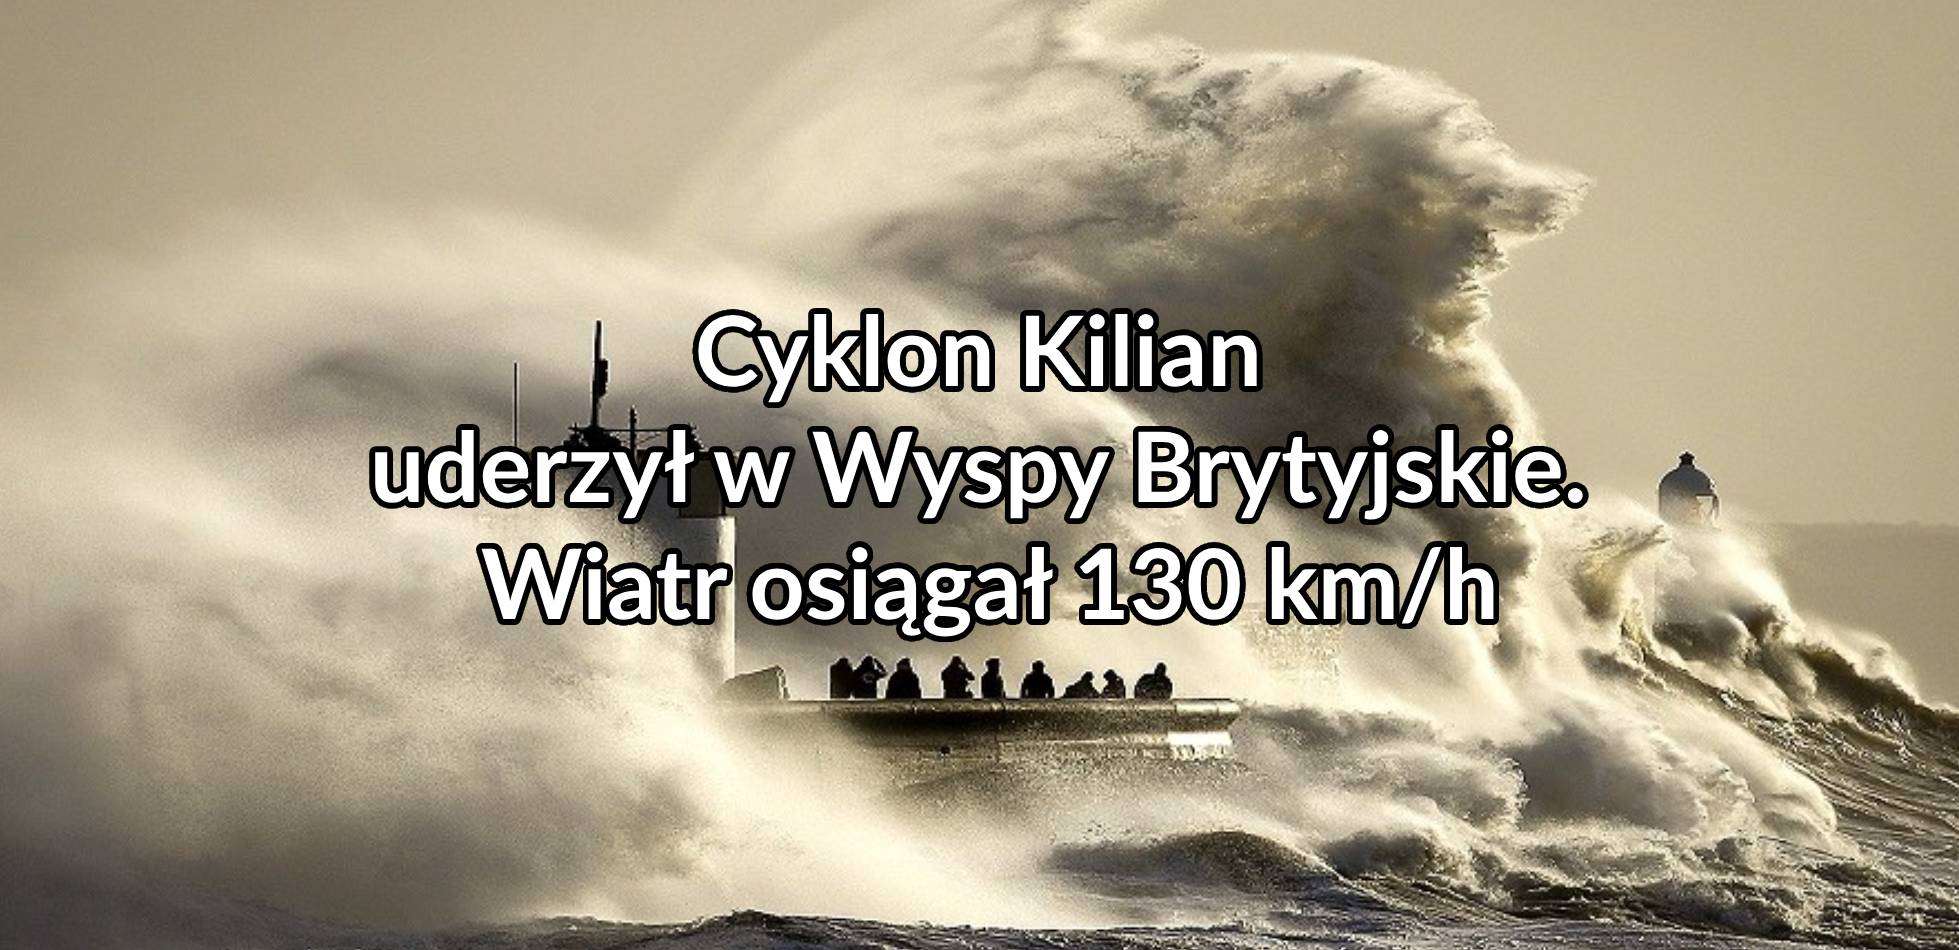 Cyklon “Kilian” (“Agnes”) uderzył w Wyspy Brytyjskie. Wiatr osiągał nawet 130 km/h